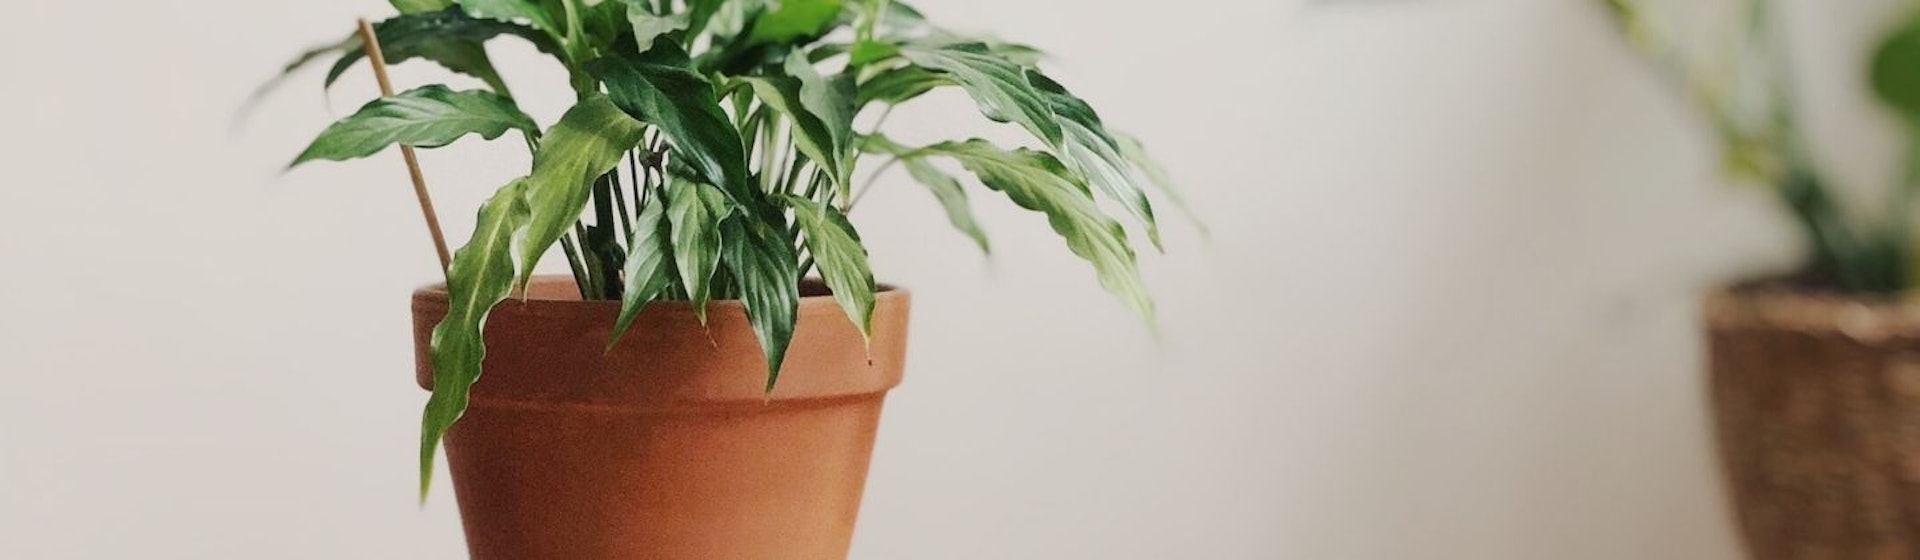 10 plantas de interior que necesitan poca luz para crecer